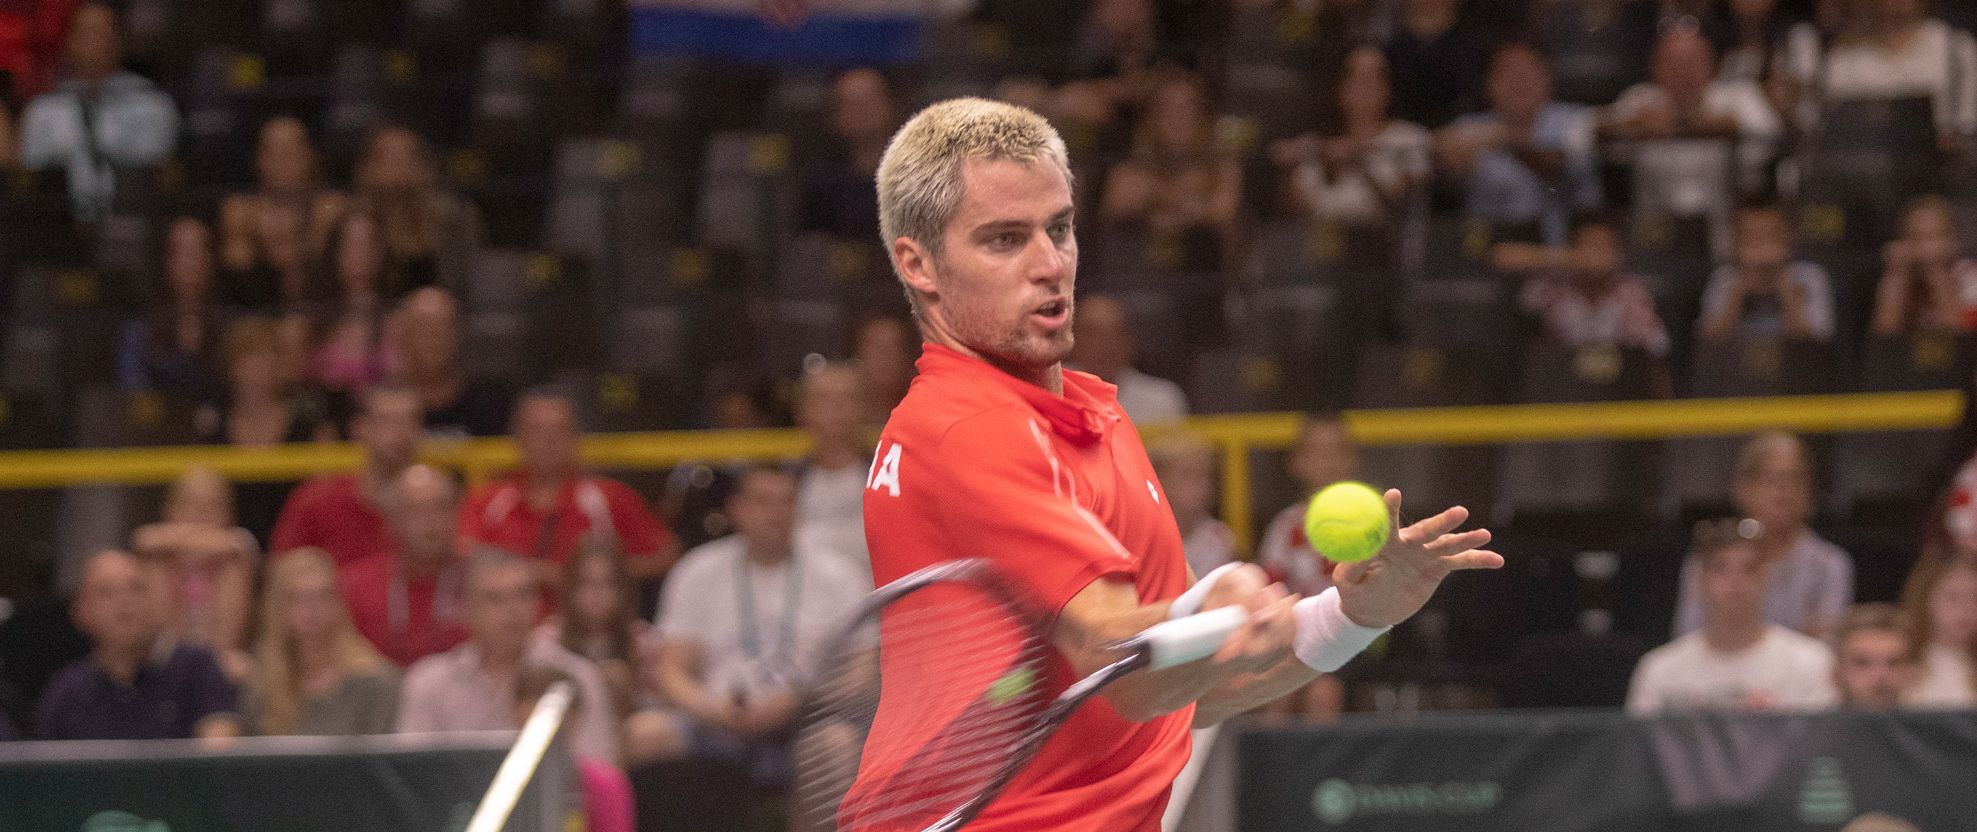 Borna Gojo zaustavljen na startu ATP turnira u Aucklandu, Čileanac uspješniji